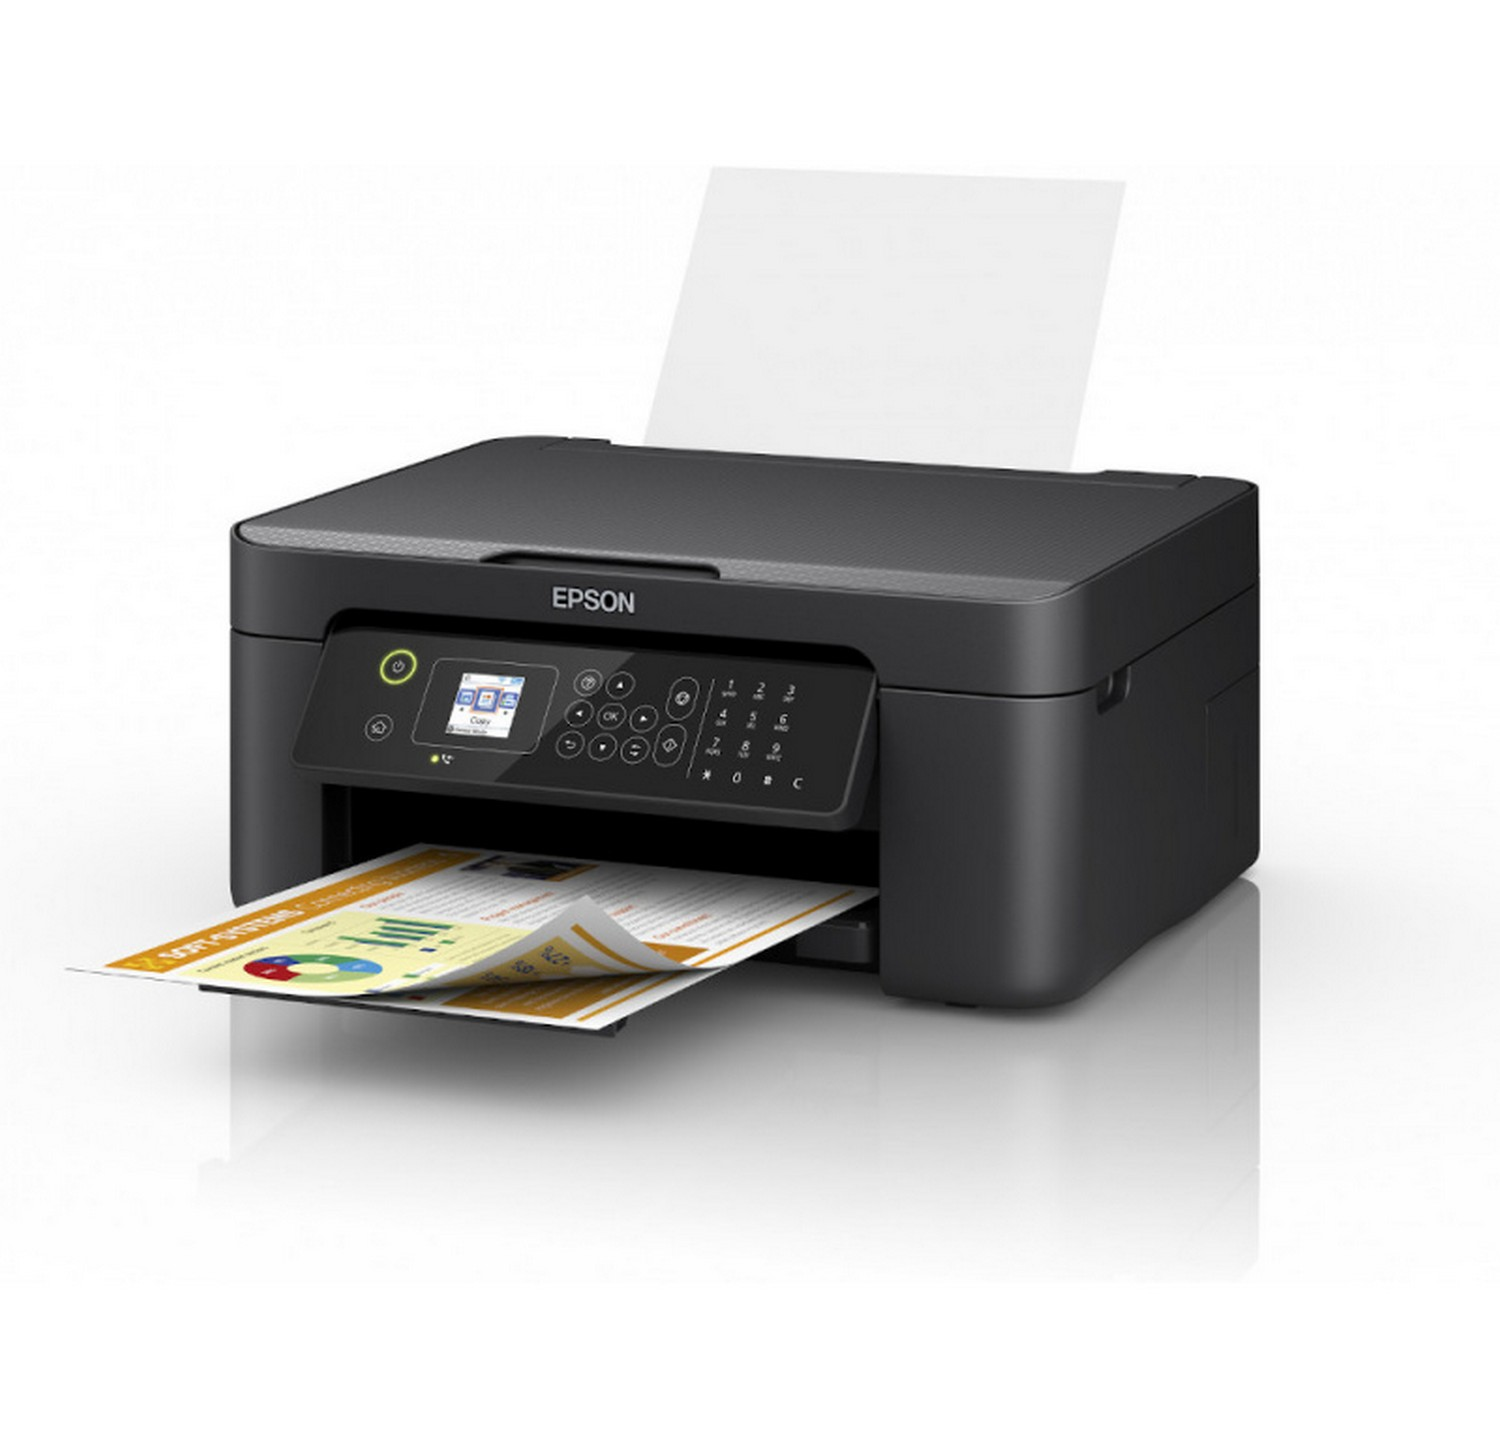 Impresora Epson Workforce wf2810dwf tinta wifi usb 33 ppm workorce fax de 4 en 1 copia cartuchos individuales din a4 multifuncion